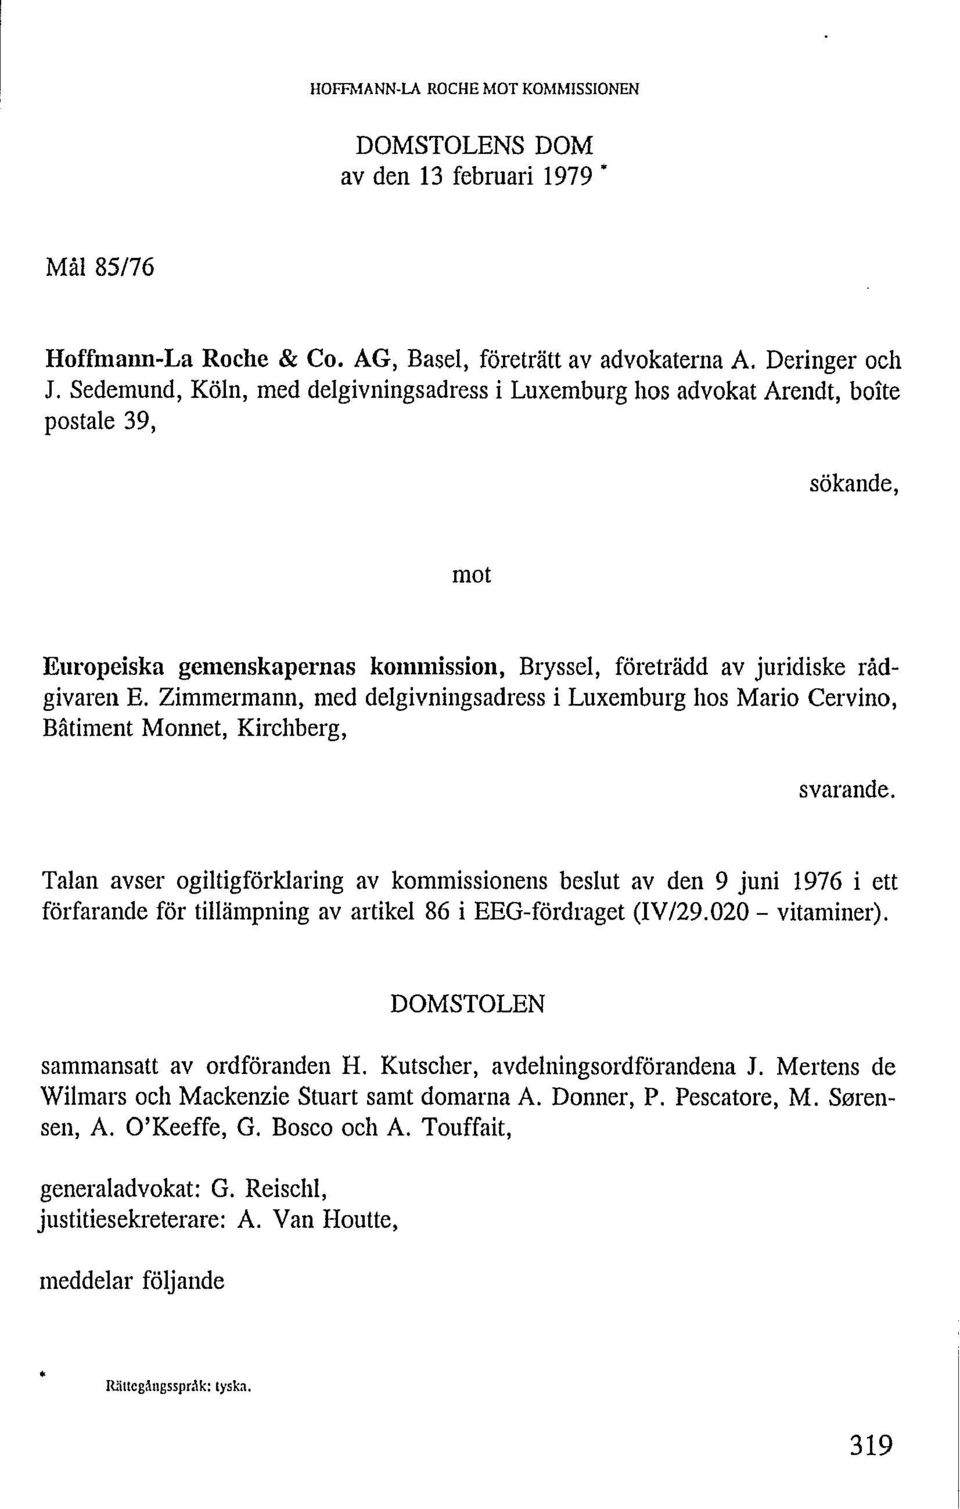 Zimmermann, med delgivningsadress i Luxemburg hos Mario Cervino, Bâtiment Monnet, Kirchberg, svarande.